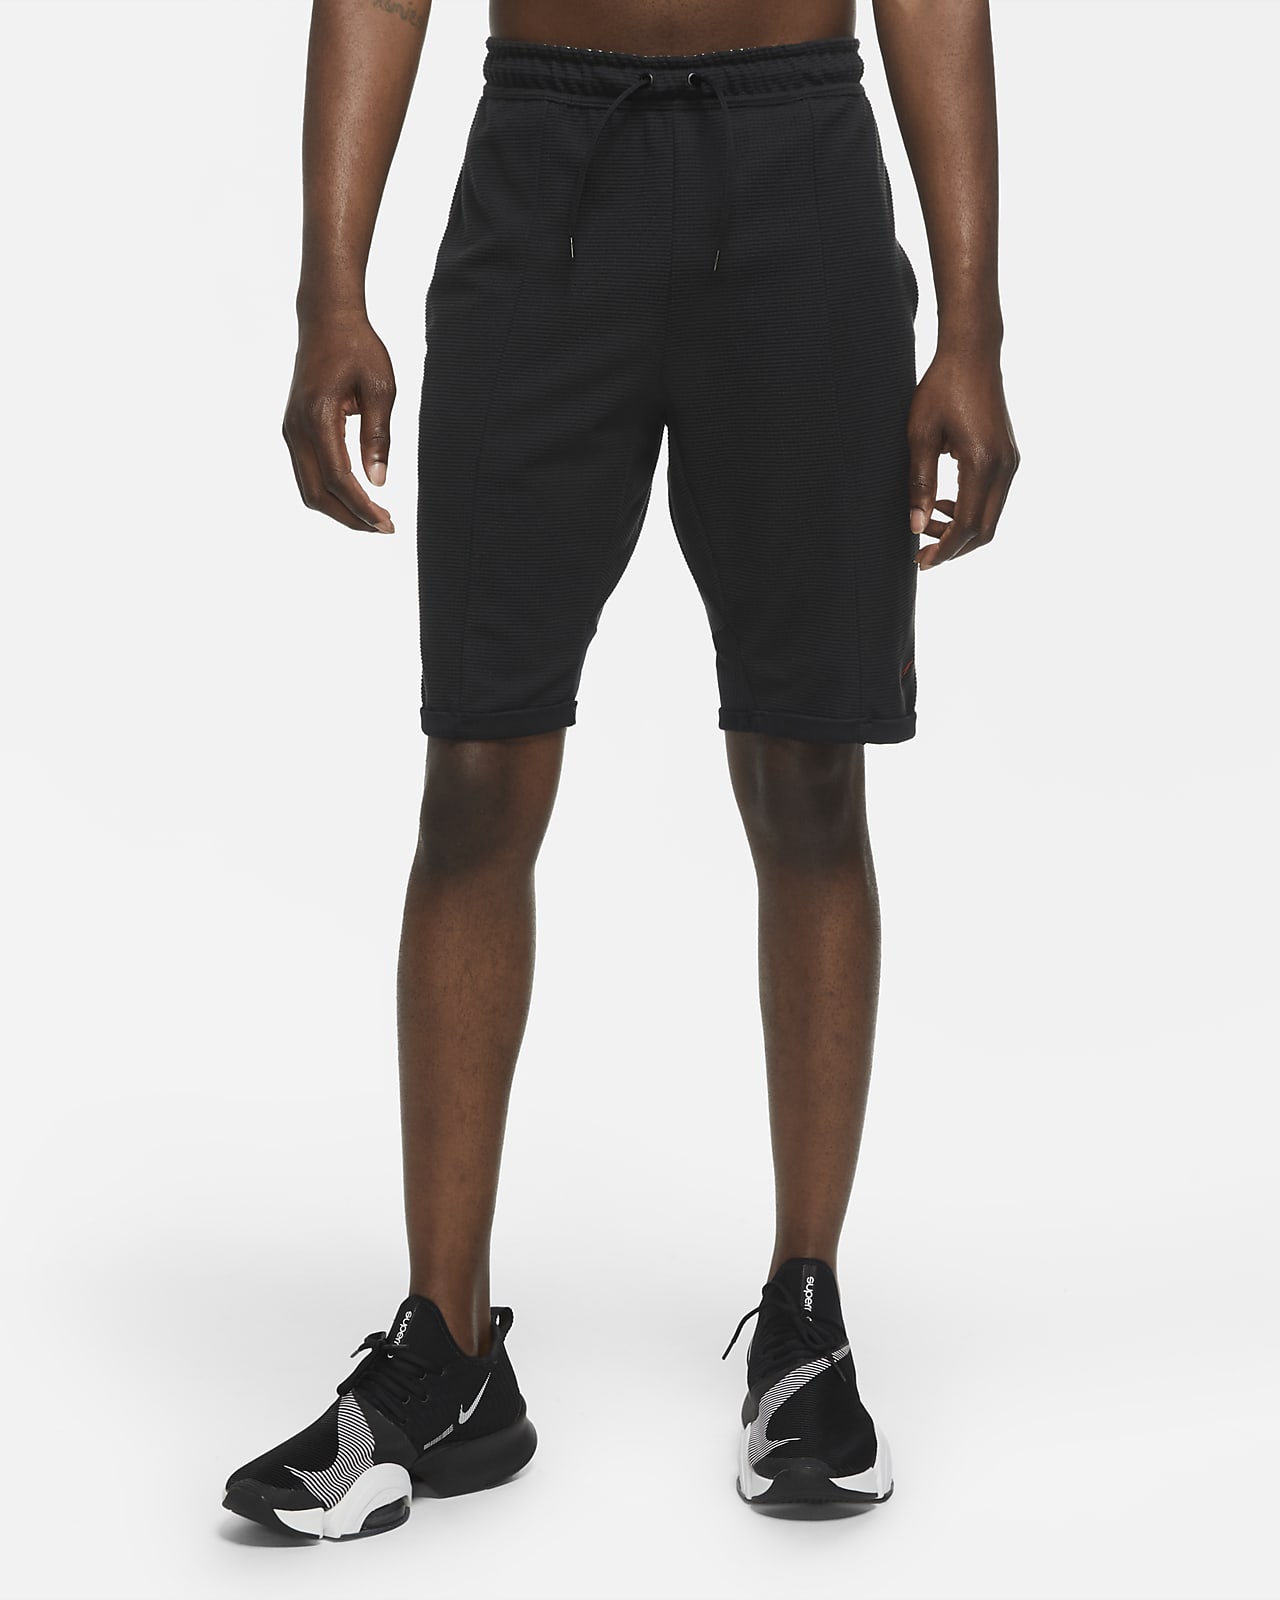 Nike Men's Training Shorts. Nike.com